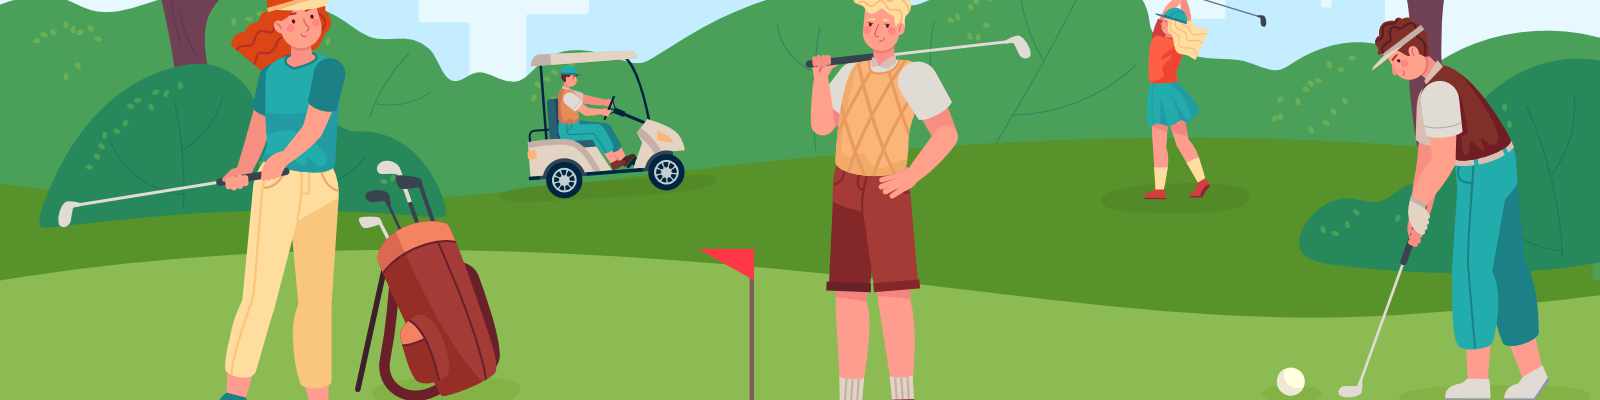 Golfer auf den Grün (photo by Tartila / Shutterstock.com)